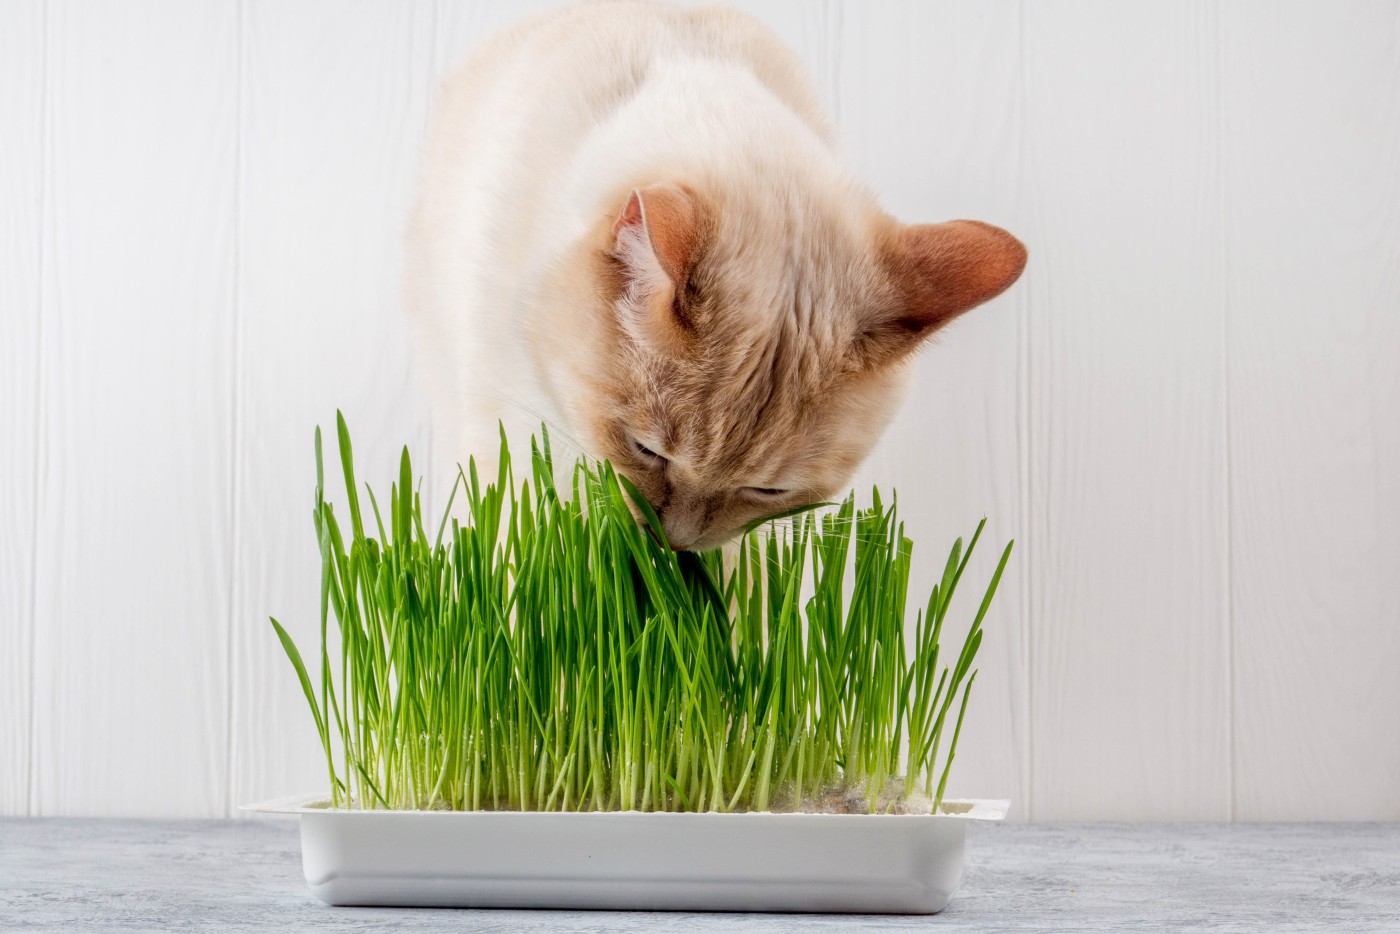 Sedante arrepentirse ponerse nervioso Hierba para gatos | Alimentación del gato | zooplus